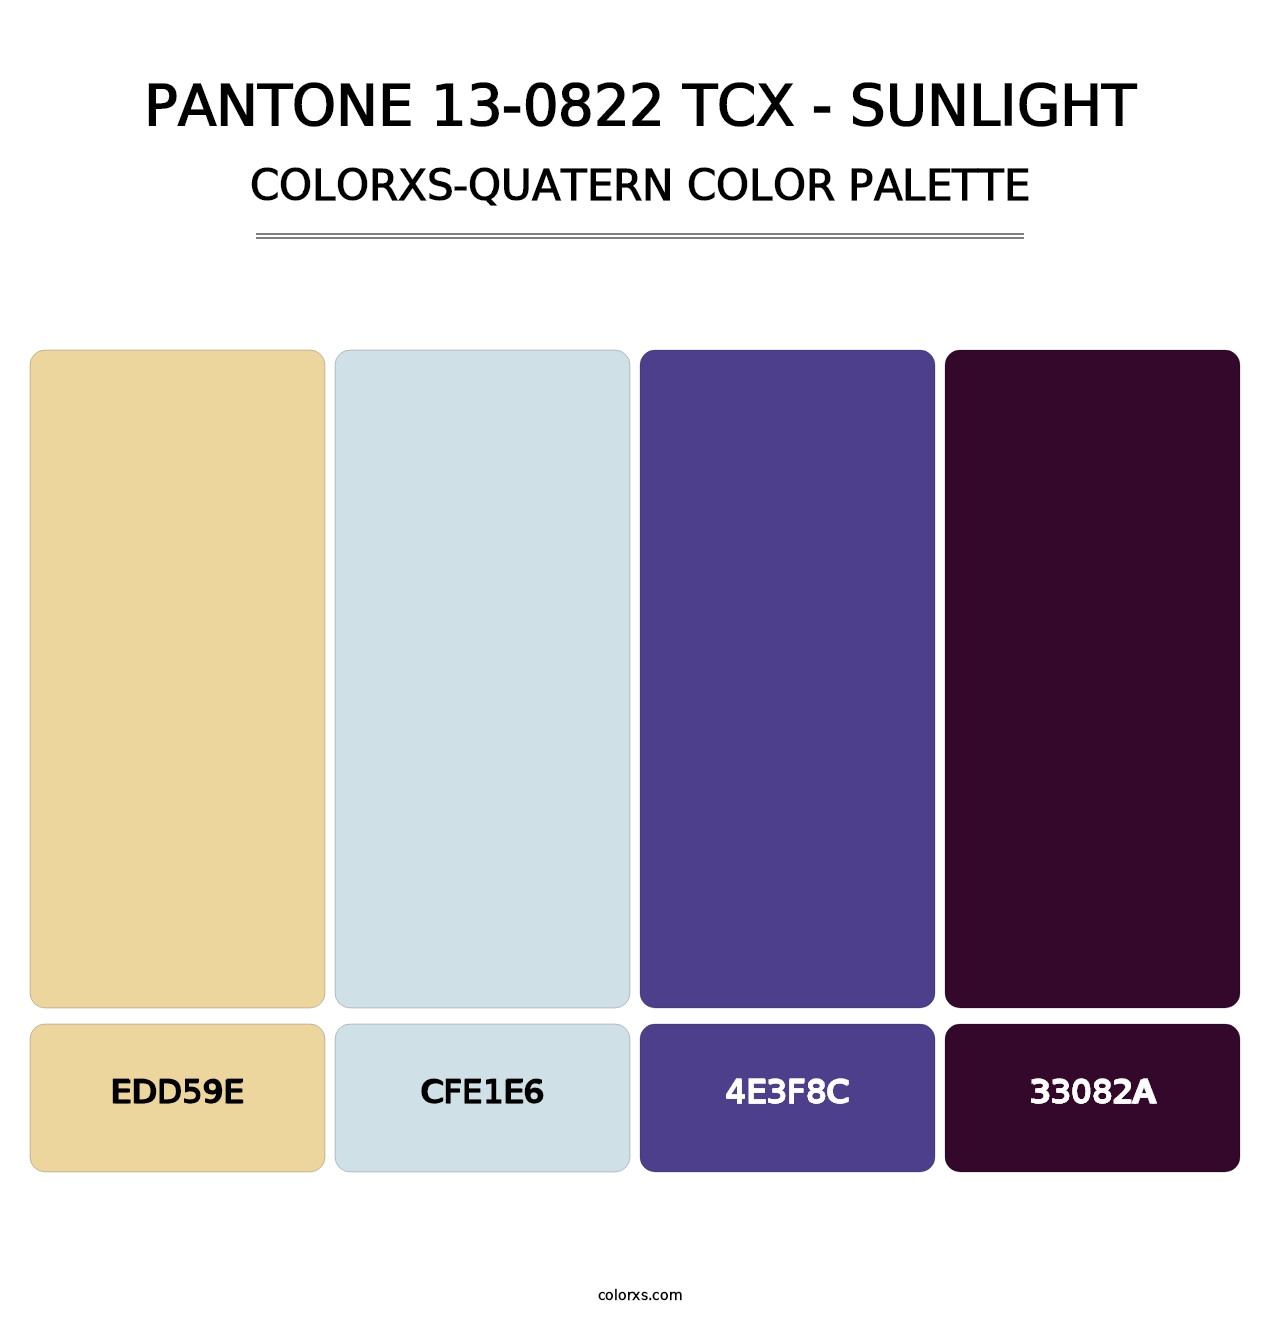 PANTONE 13-0822 TCX - Sunlight - Colorxs Quatern Palette